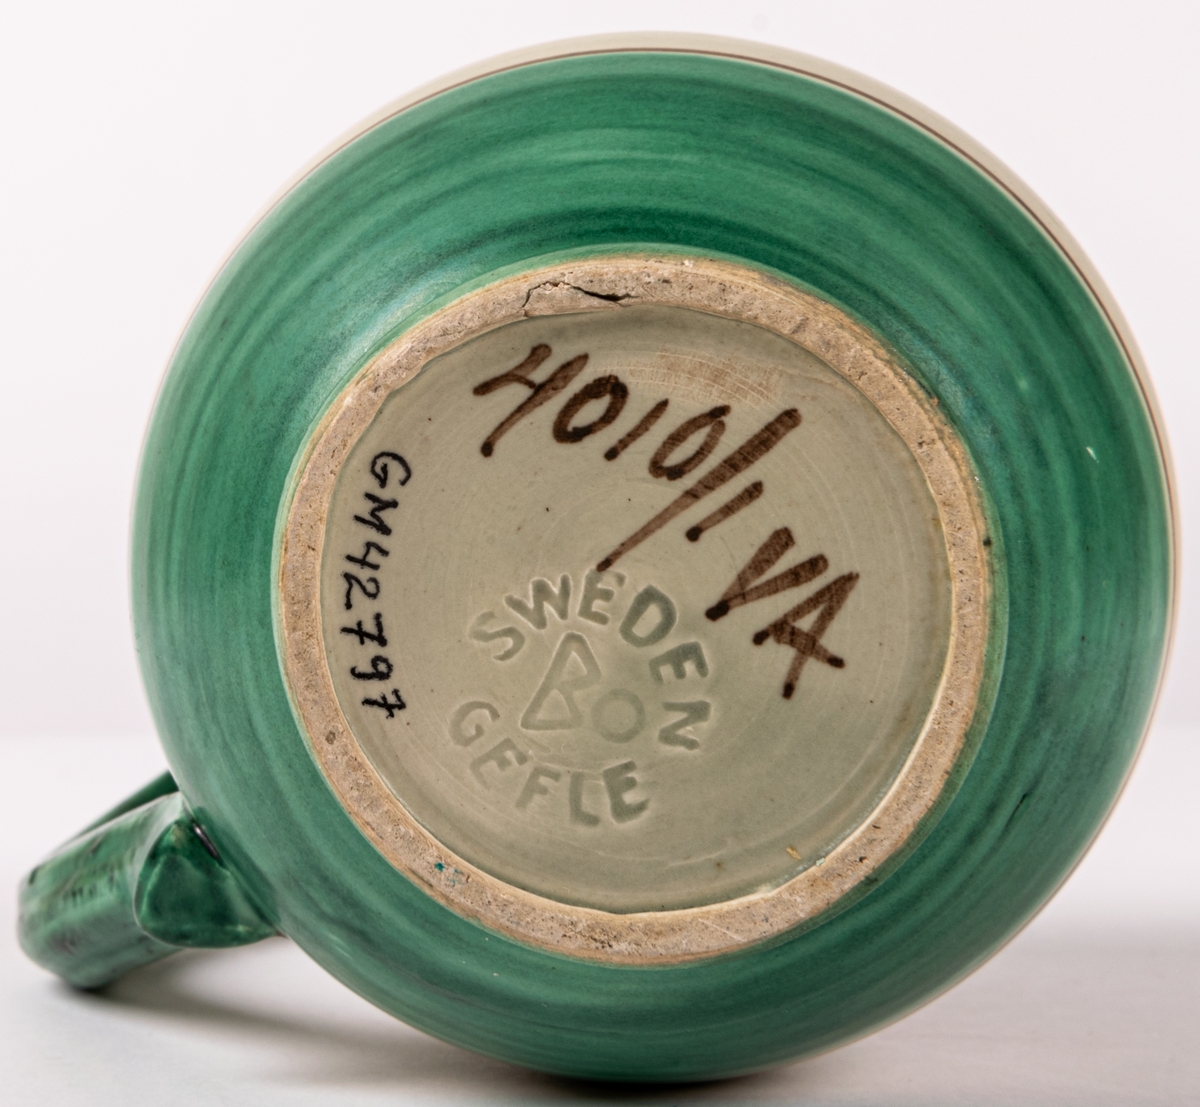 Tillbringare med hänkel i lergods från Bo Fajans, rymmer 3,5 dl. Formen skapad 1925 av konstnär Eva Jancke-Björk. Denna dekor/glasyr VA - grågrön matt glasyr med grön och brun dekor - producerades mellan 1935-43. Pipen limmad.